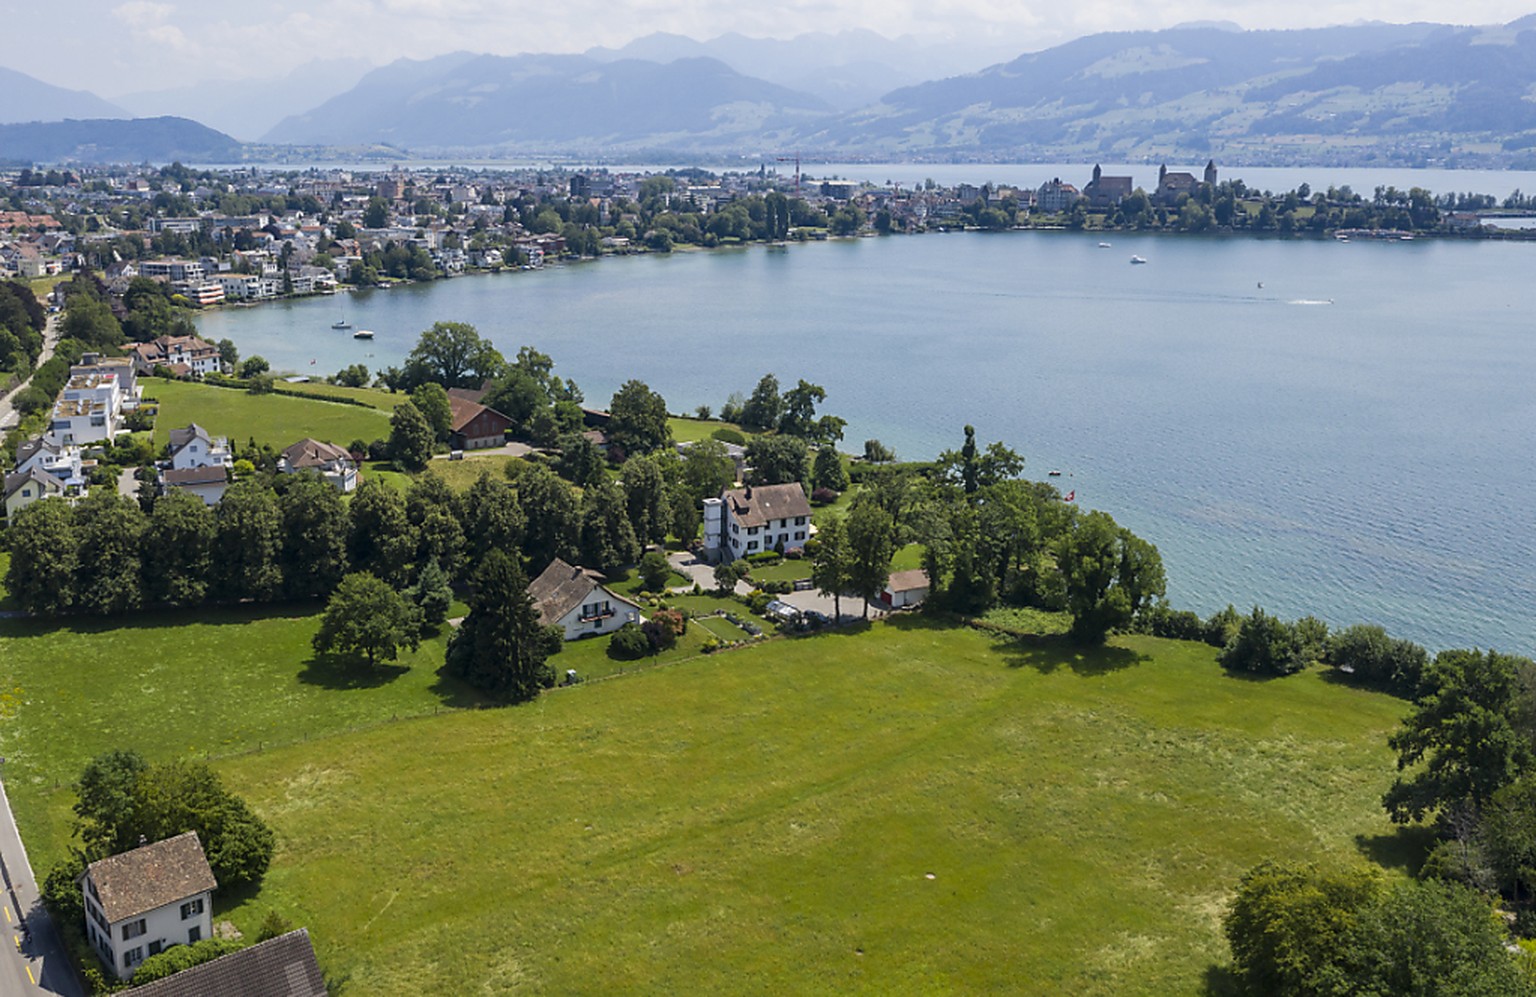 Blick auf das Baugrundstück von Tennisspieler Roger Federer am Zürichsee in Rapperswil-Jona, aufgenommen am 19. Juli 2019 (Archivbild).